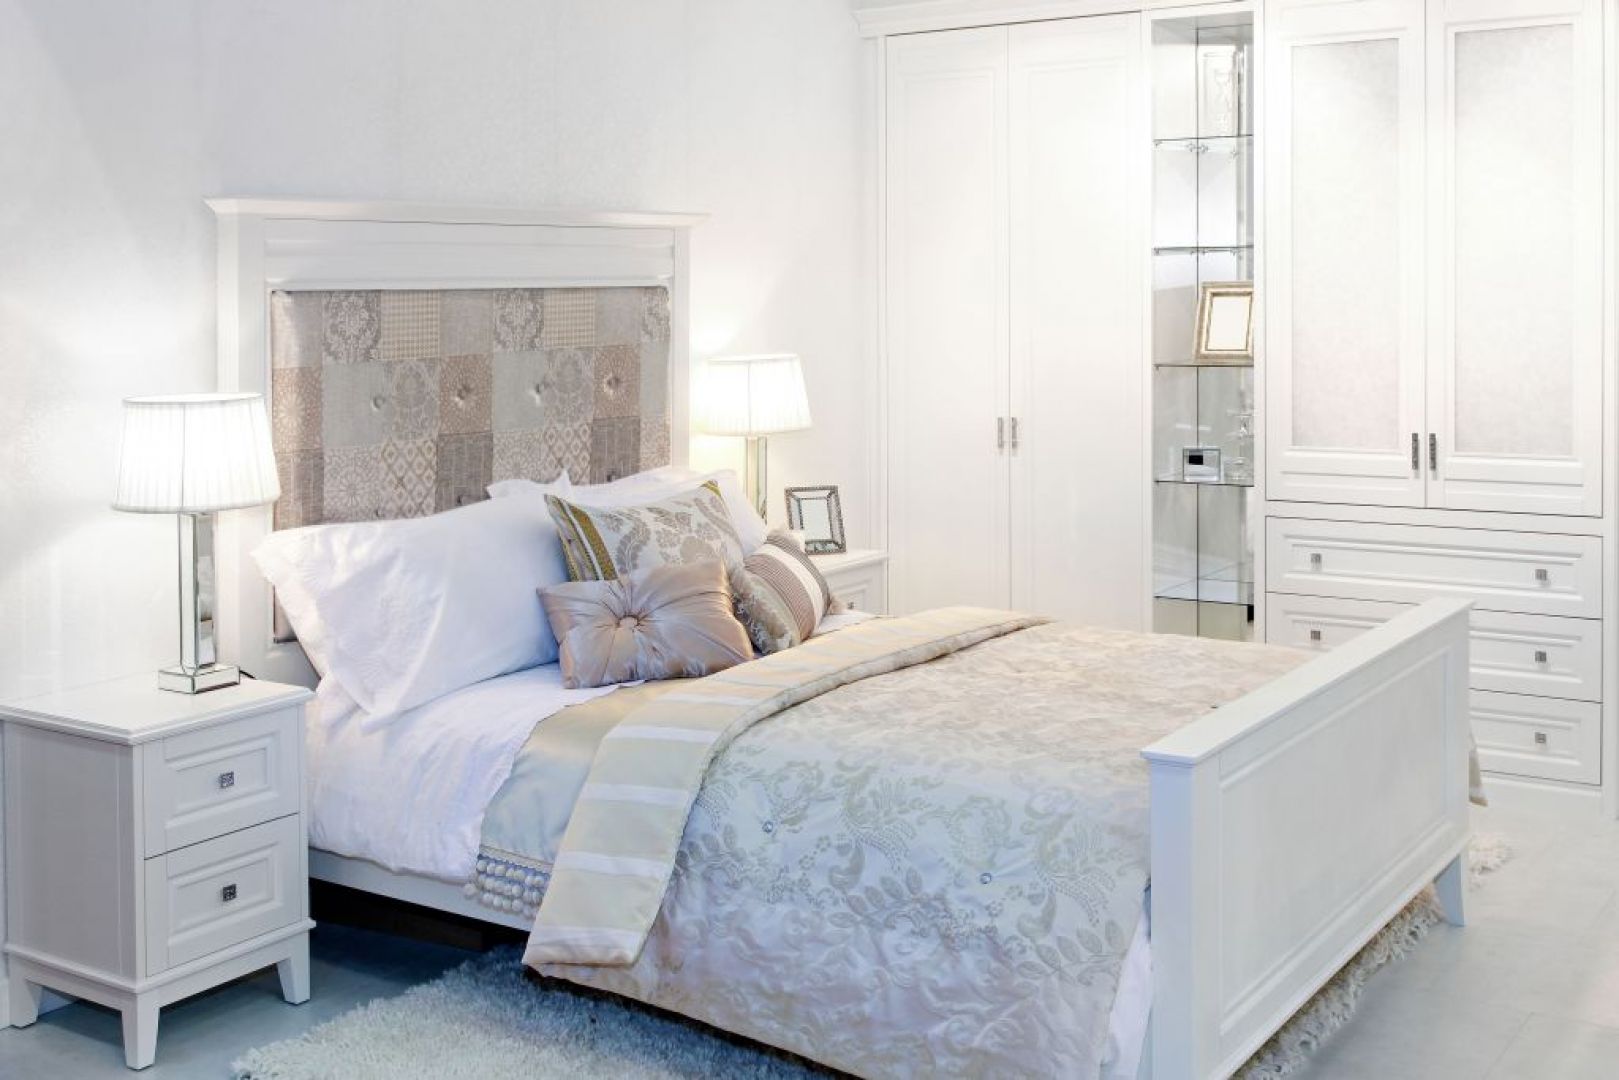 Gustowne tkaniny położone na łóżku mogą pięknie ozdobić nawet najprostszą w stylistyce ramę. Fot. Hirnschuch